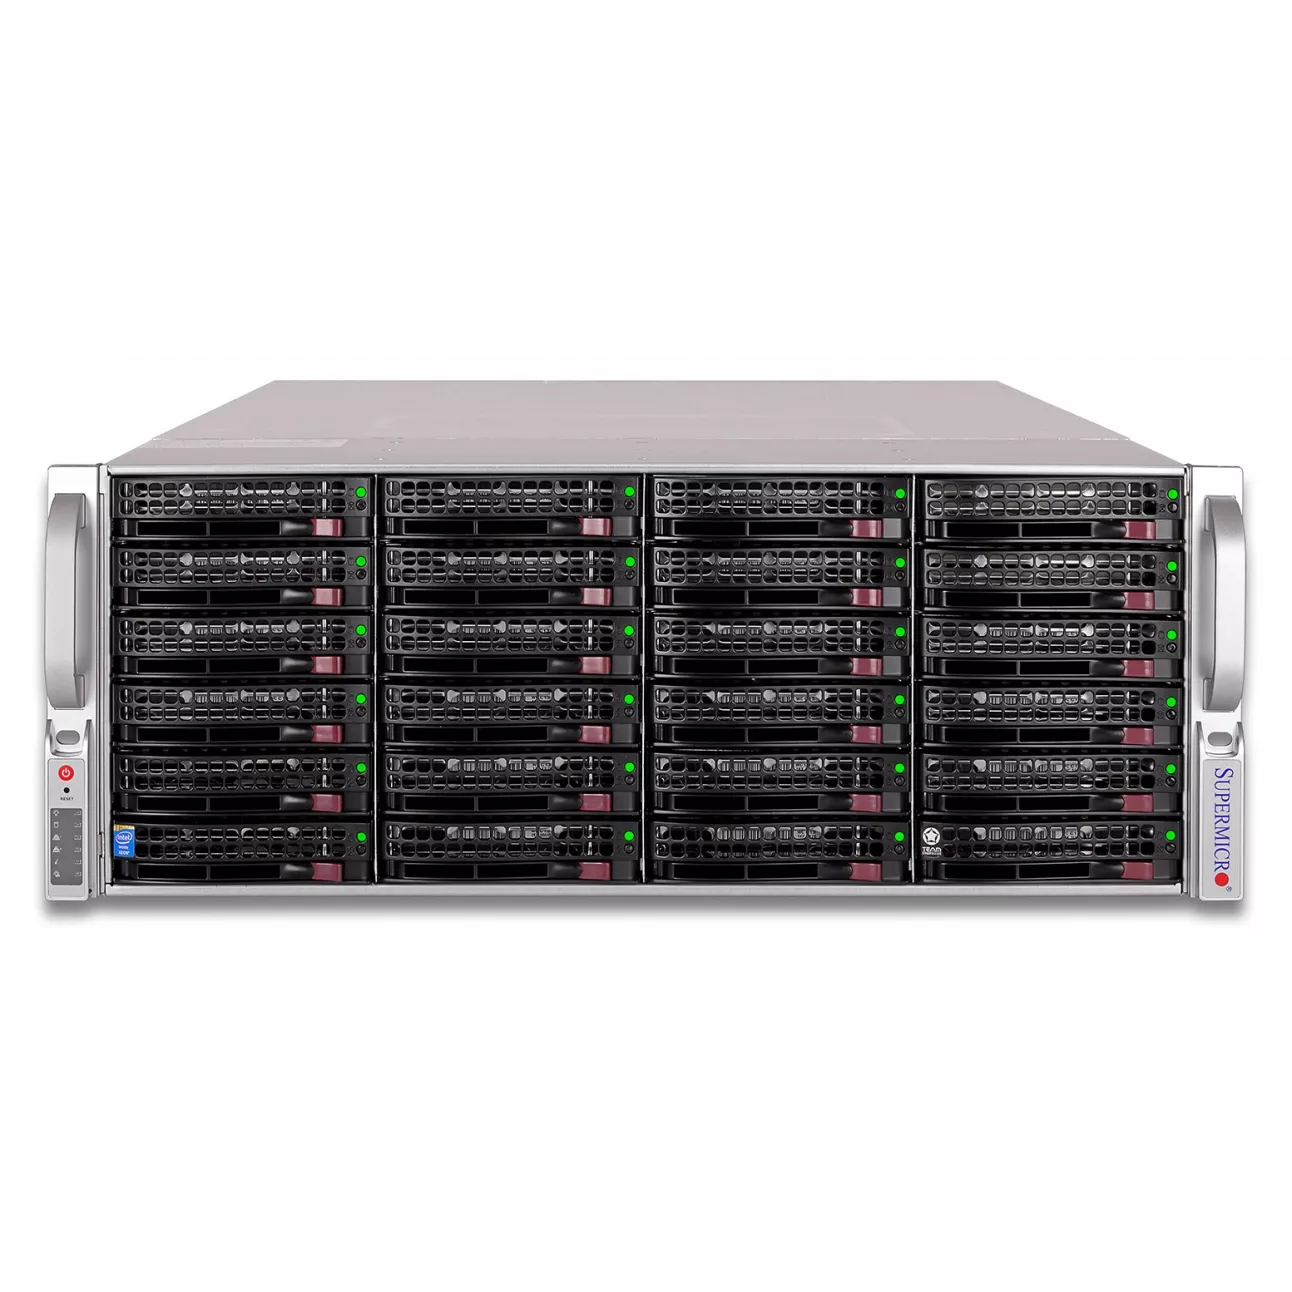 Сервер Supermicro SuperStorage 6048R-E1CR24H, 1 процессор Intel 6C  E5-2609v3 1.90GHz, 16GB DRAM